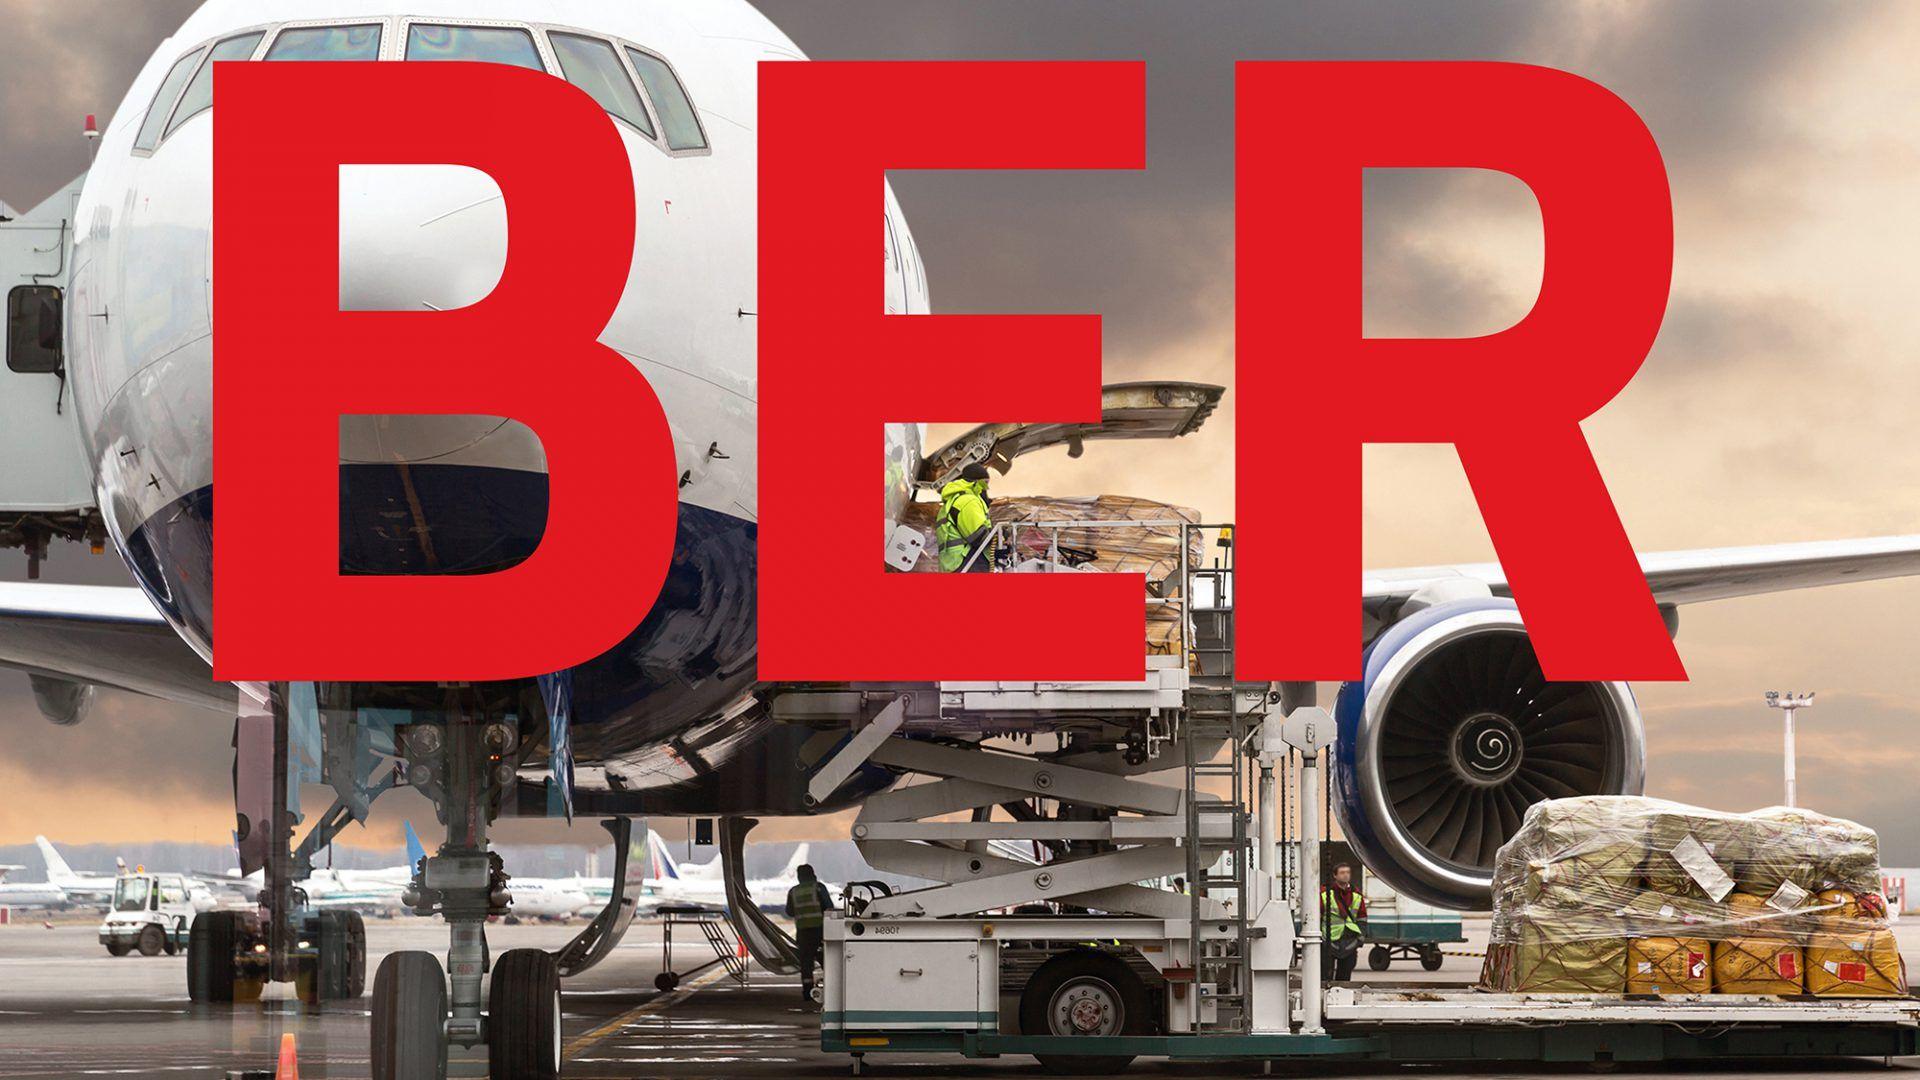 Ber Logo - Naming and Corporate Design for BER | Realgestalt GmbH, Berlin